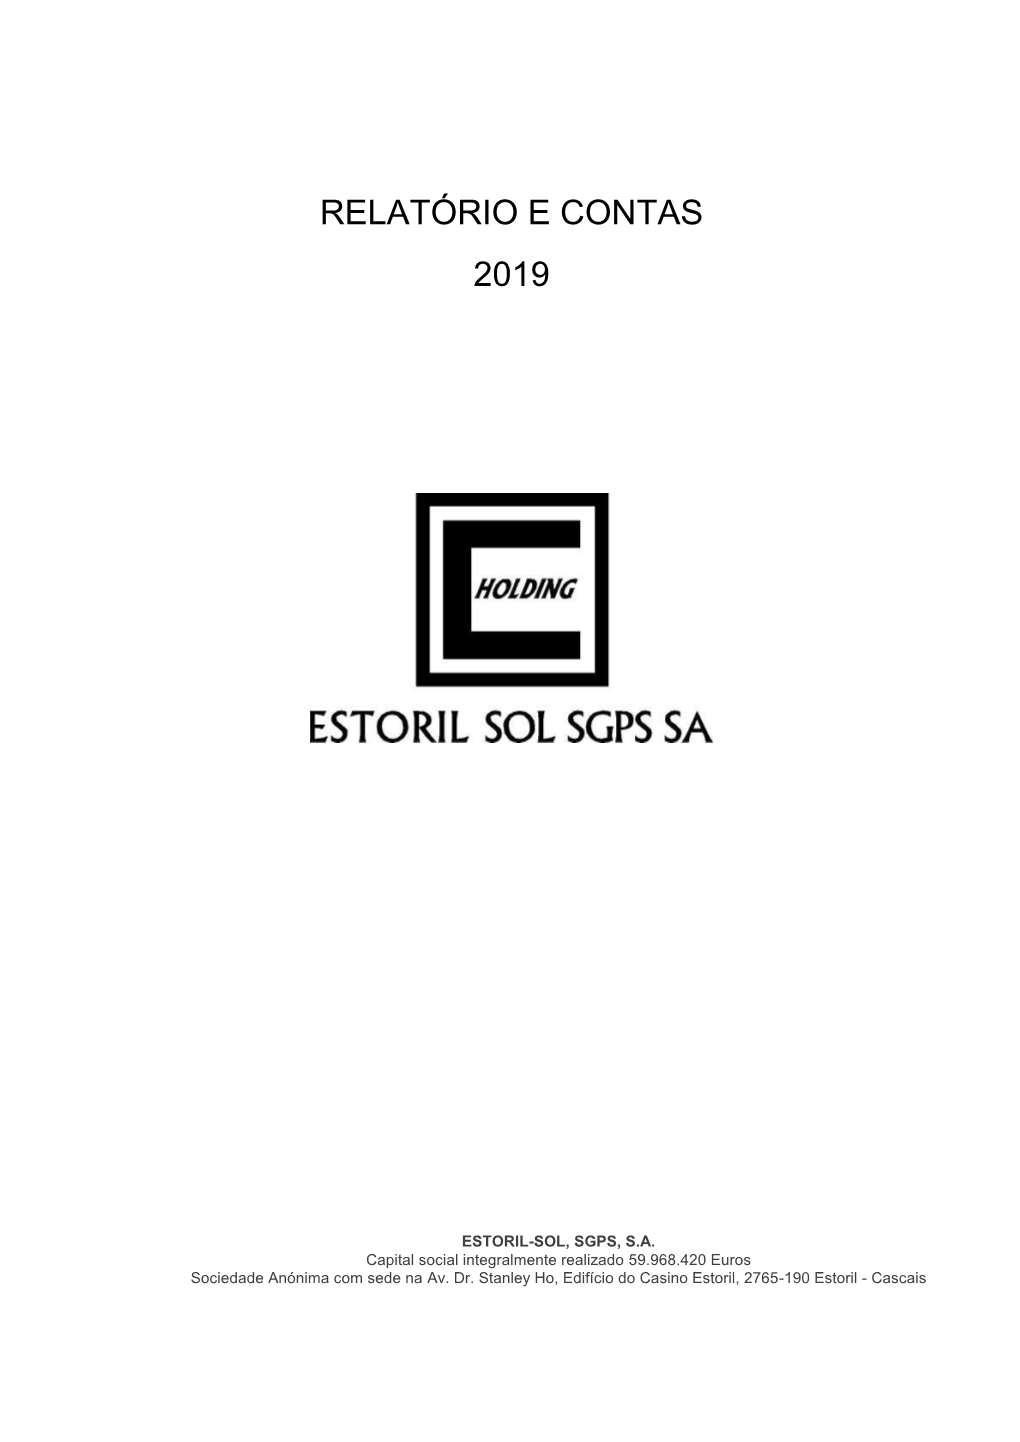 Estoril Sol, SGPS, S.A